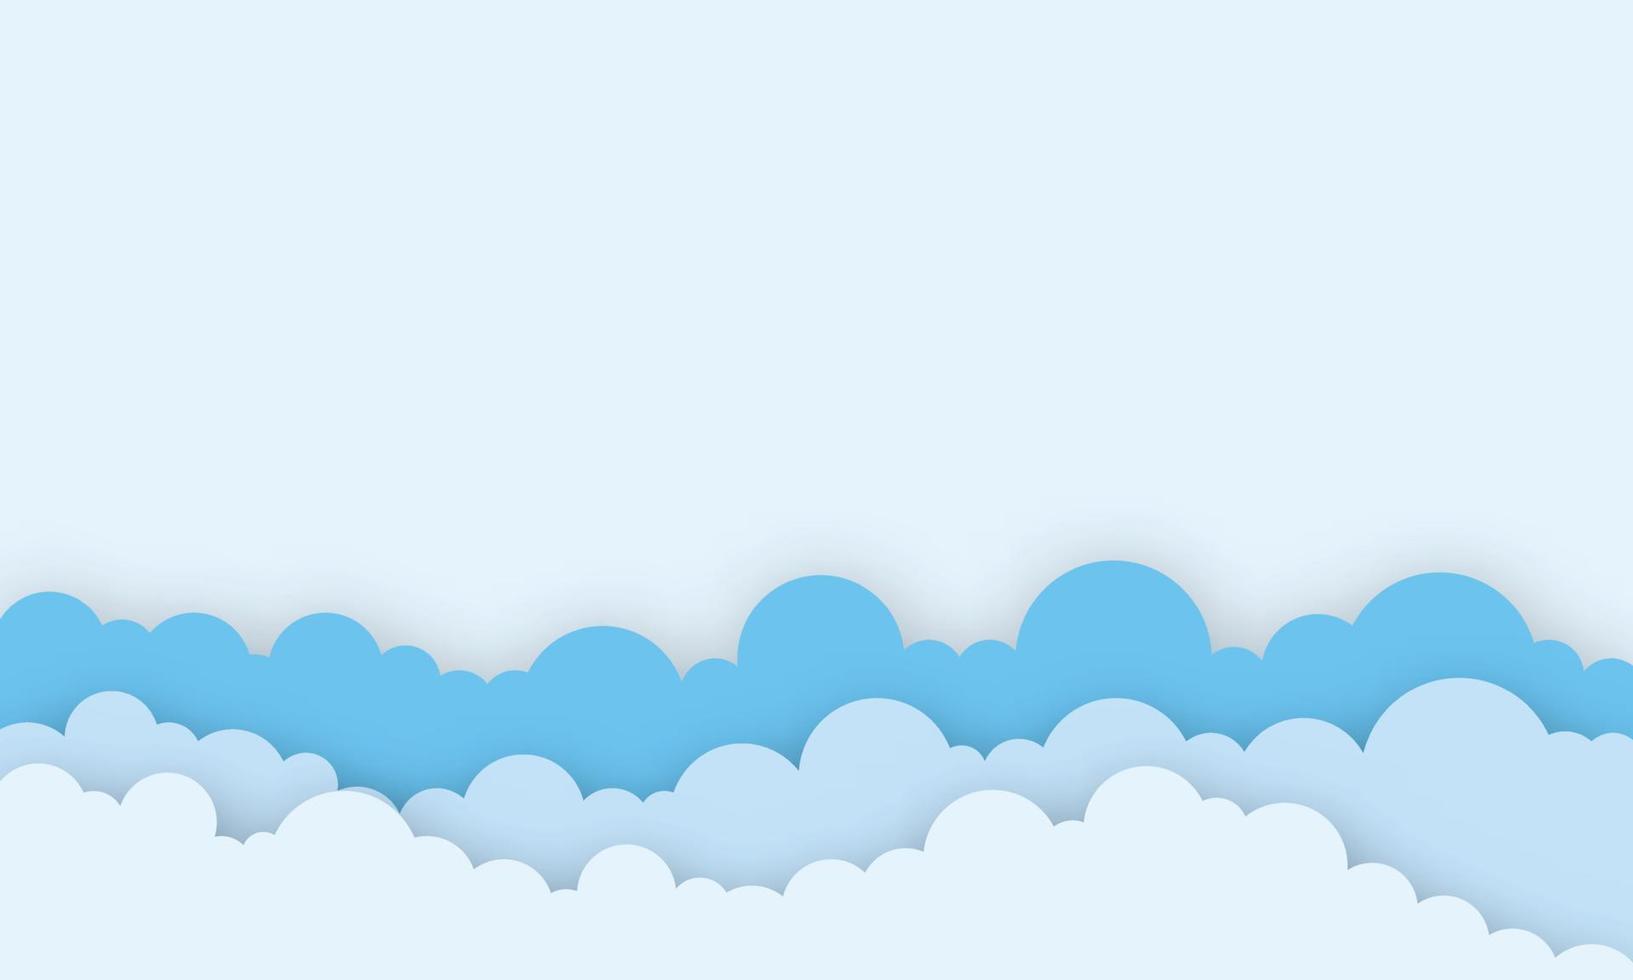 papierkunst van heldere wolk met speelgoeddouche op blauwe hemel papier gesneden stijl, babyjongen kaart illustratie vector